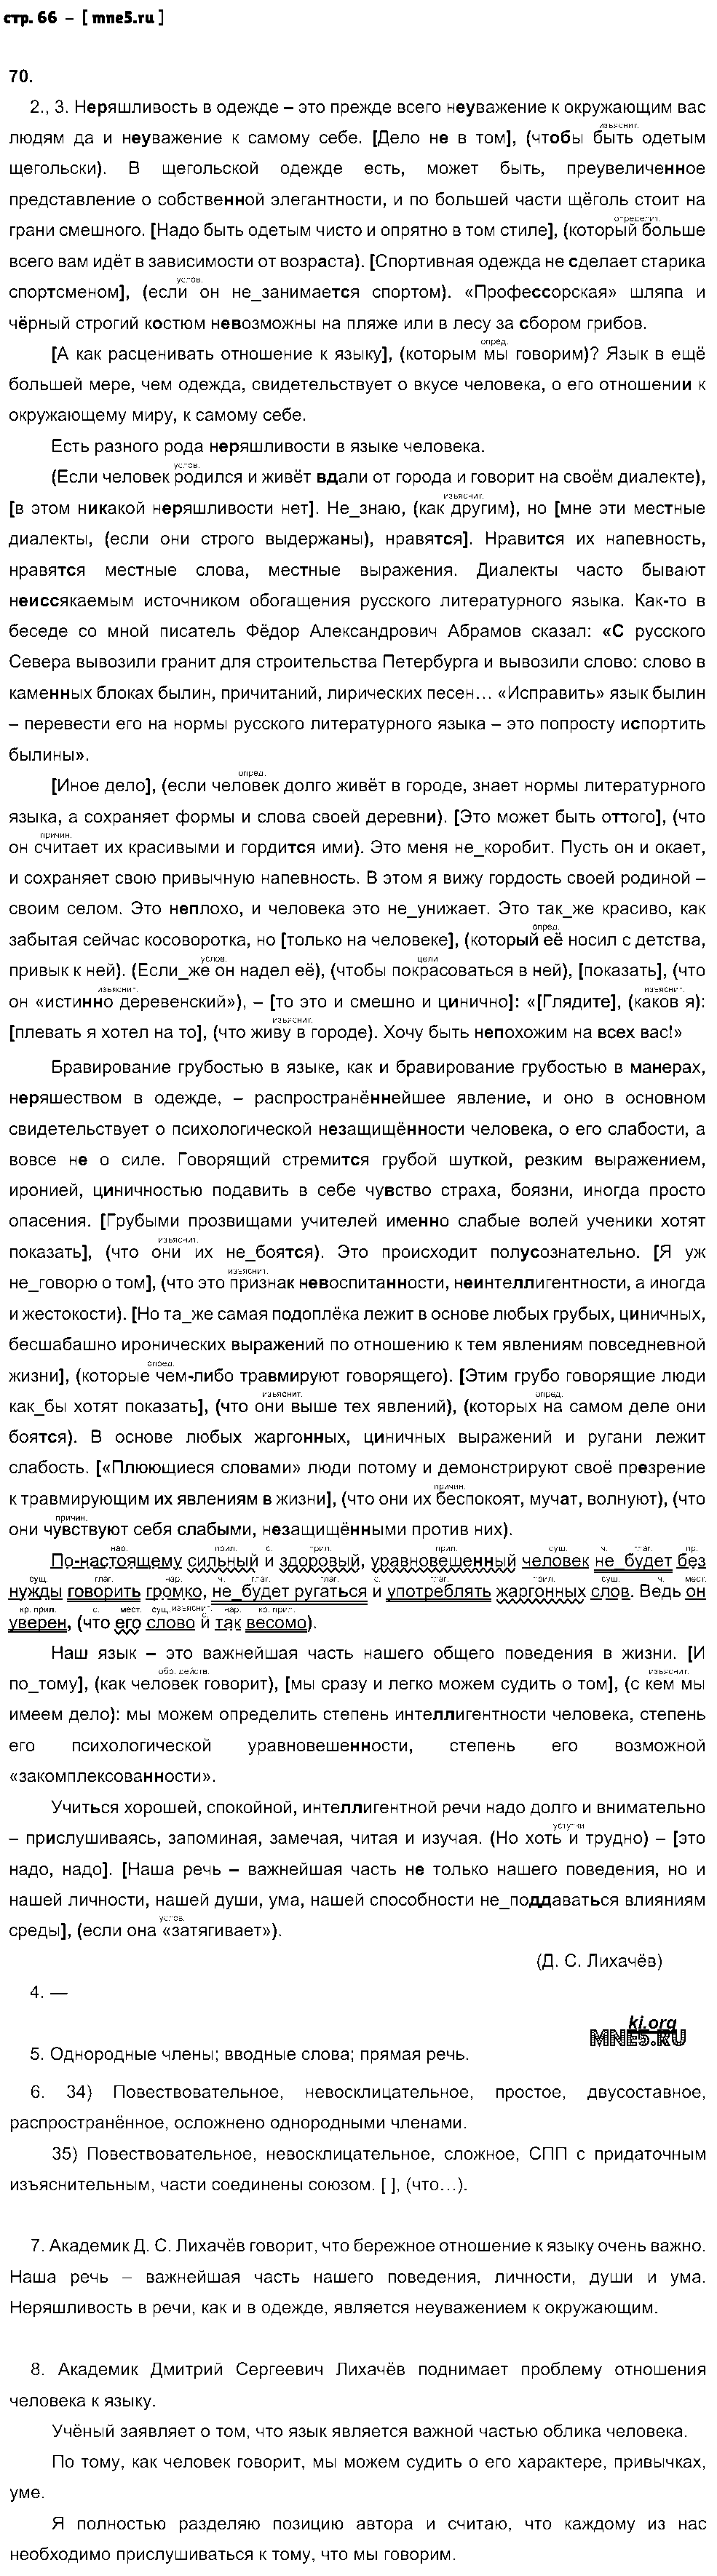 ГДЗ Русский язык 9 класс - стр. 66